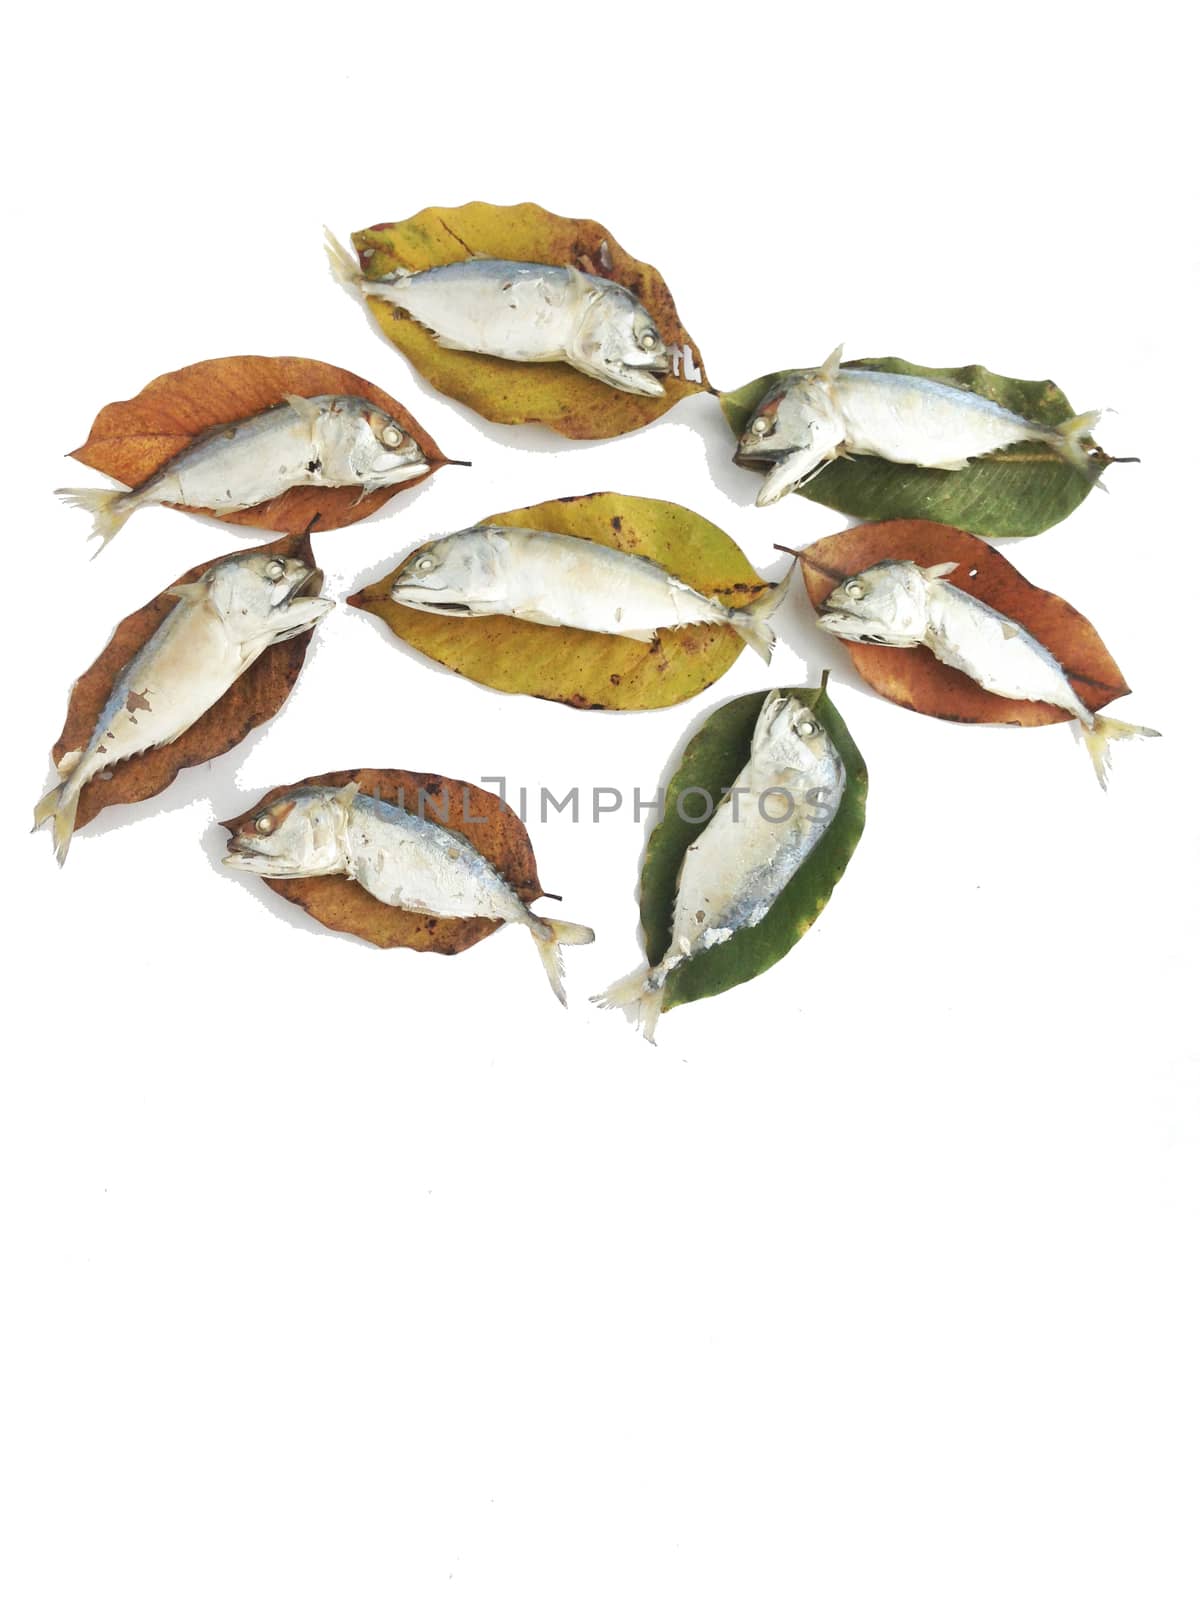 Short mackerel on dry leaves